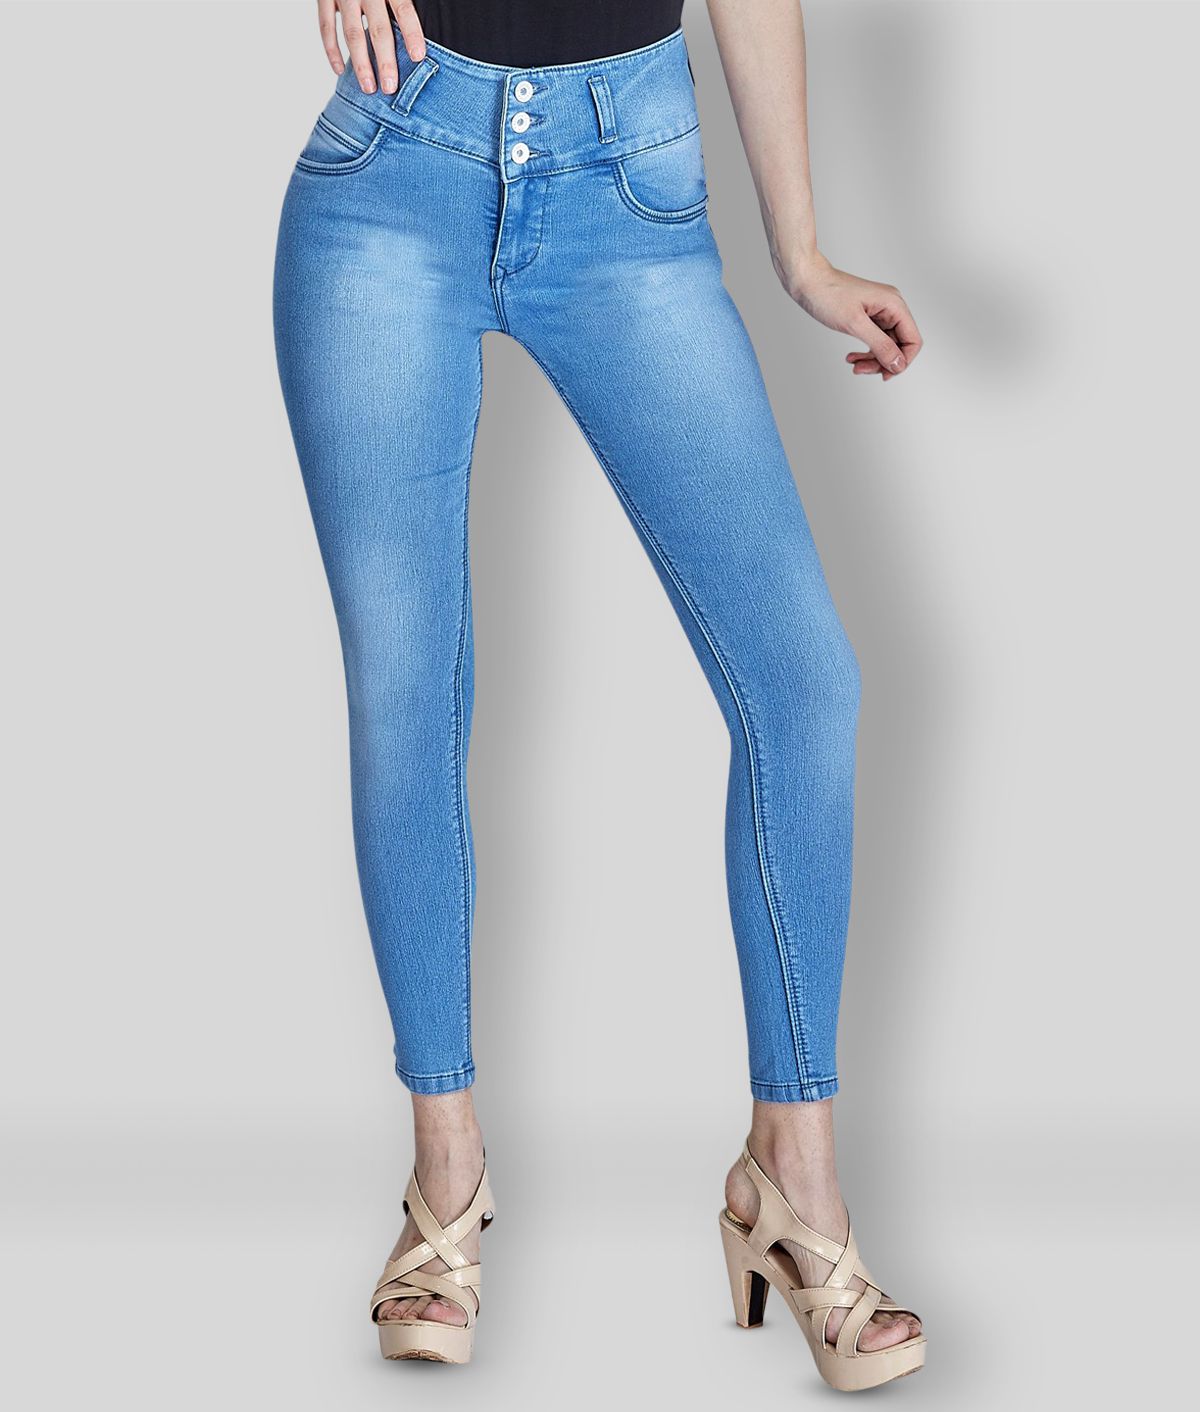     			Rea-lize - Light Blue Cotton Blend Women's Jeans ( Pack of 1 )